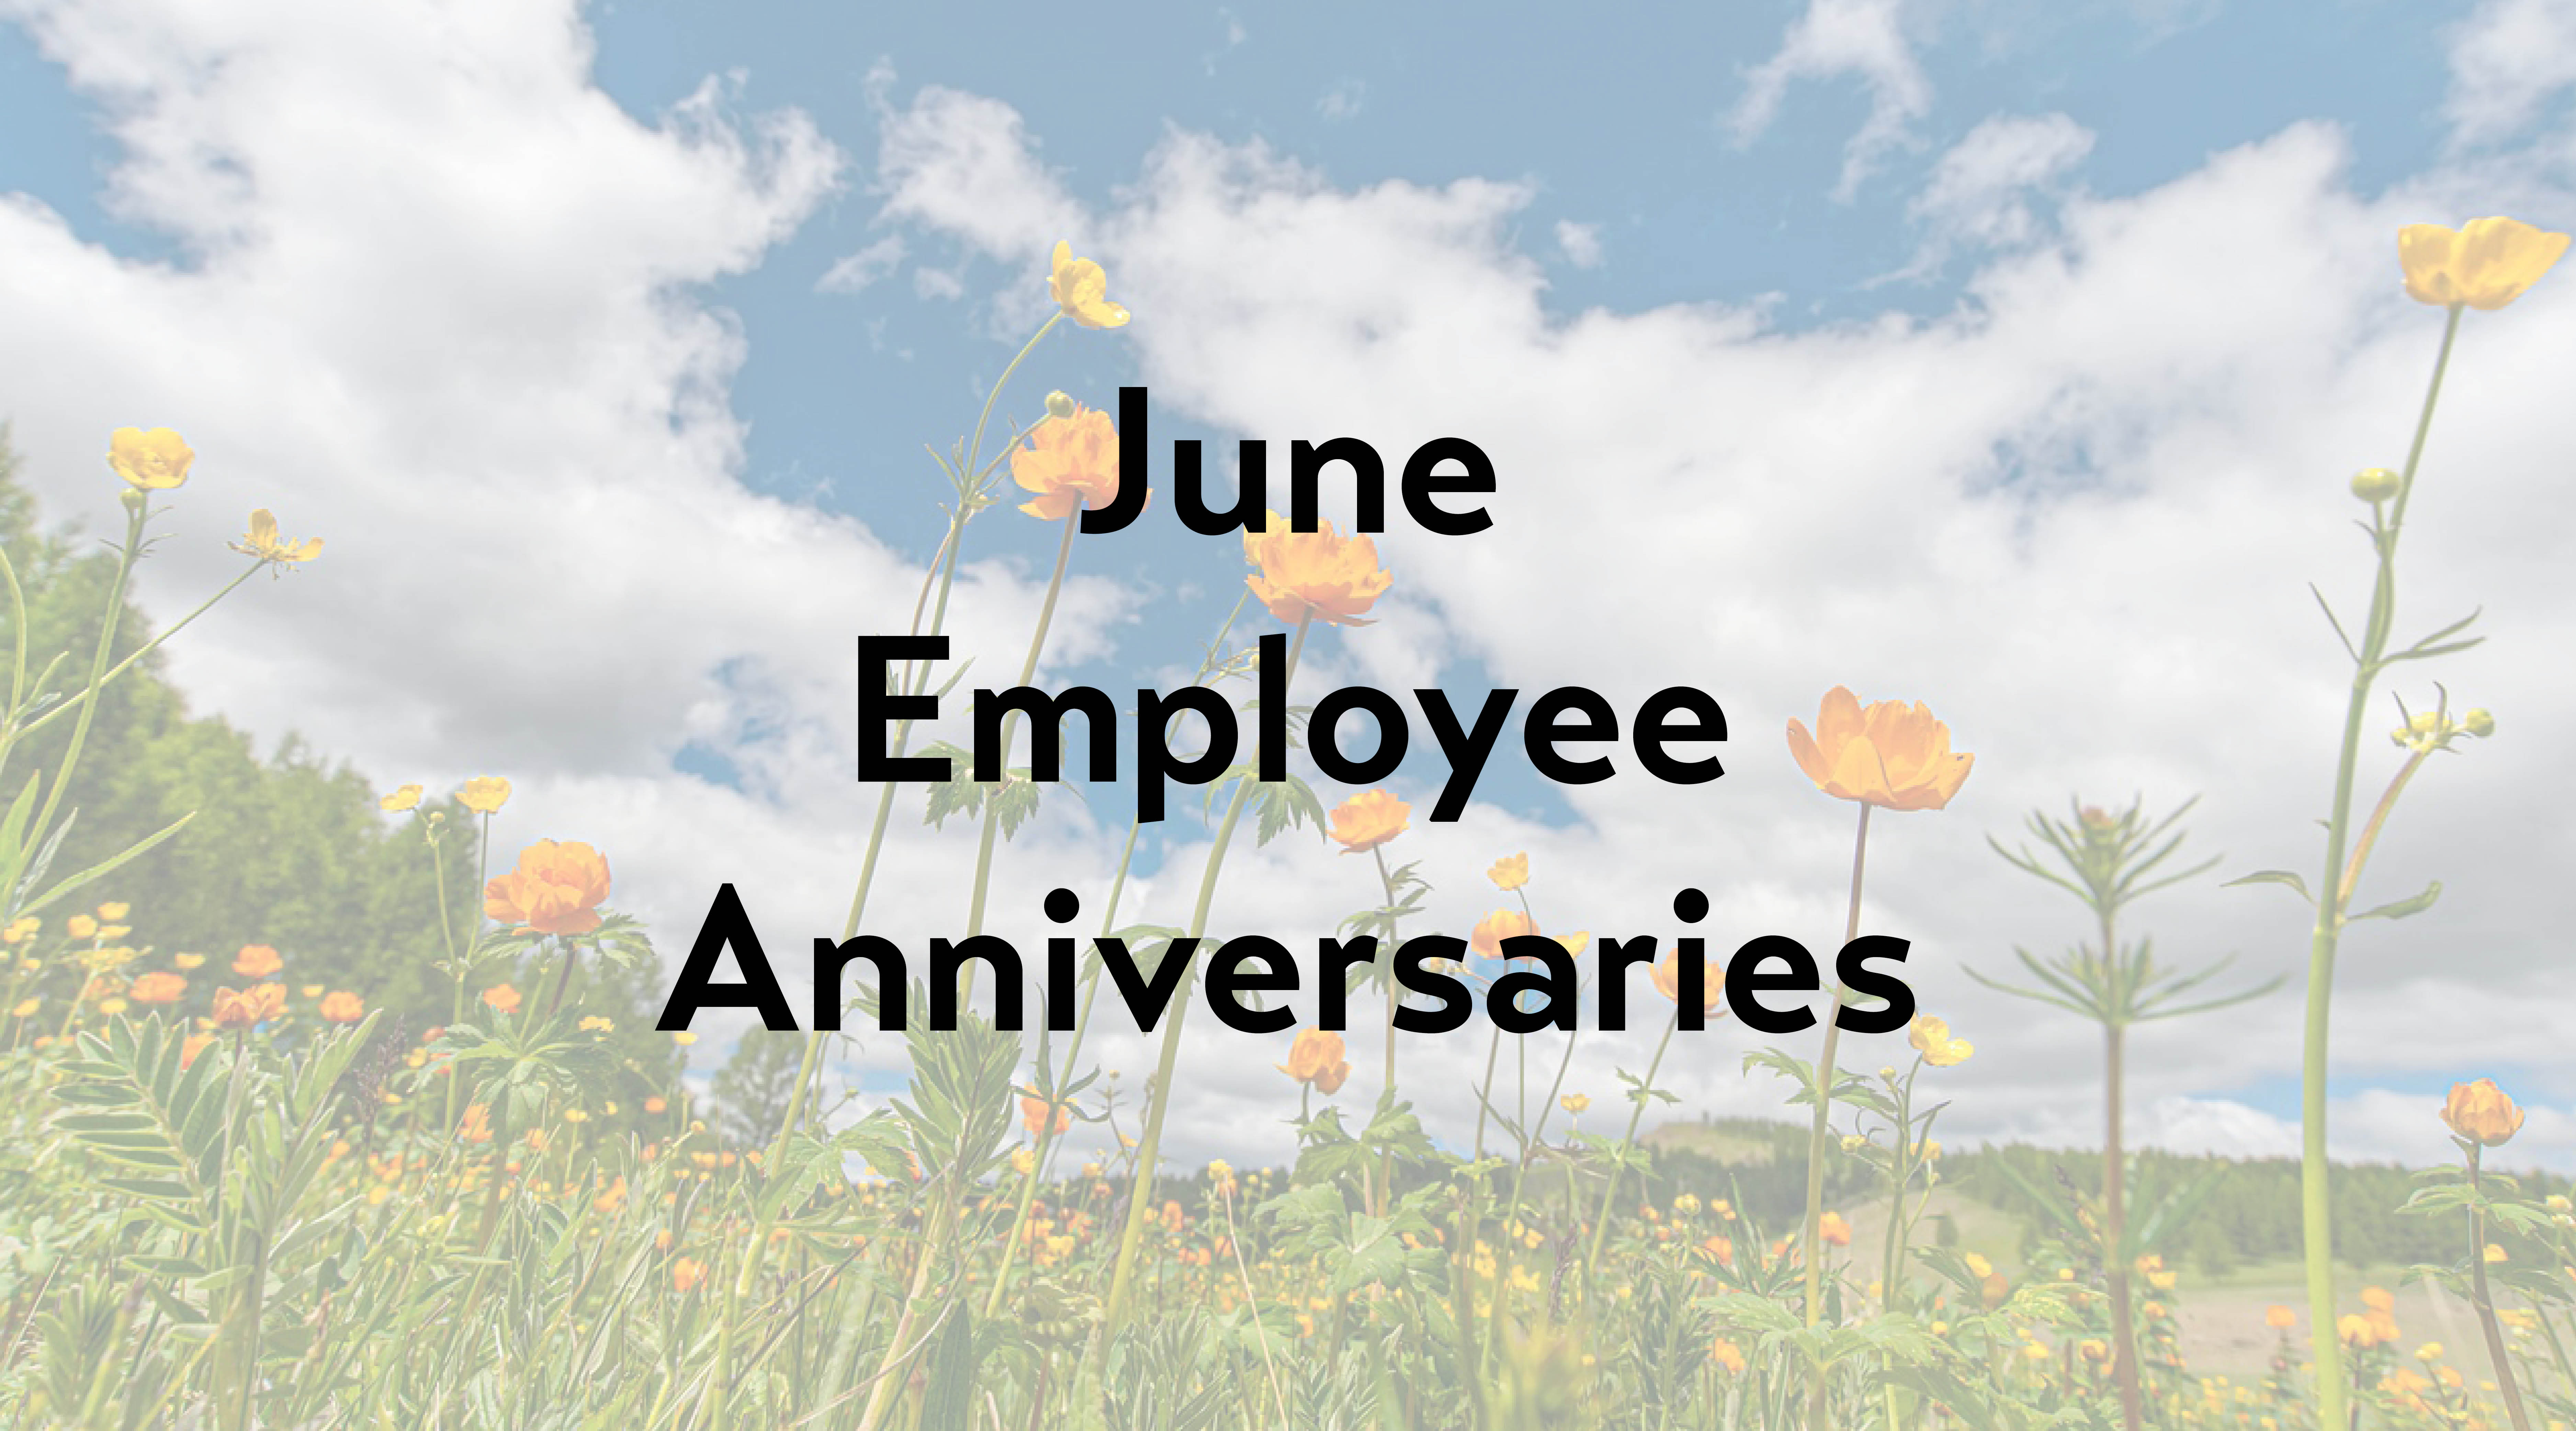 June Employee Anniversaries